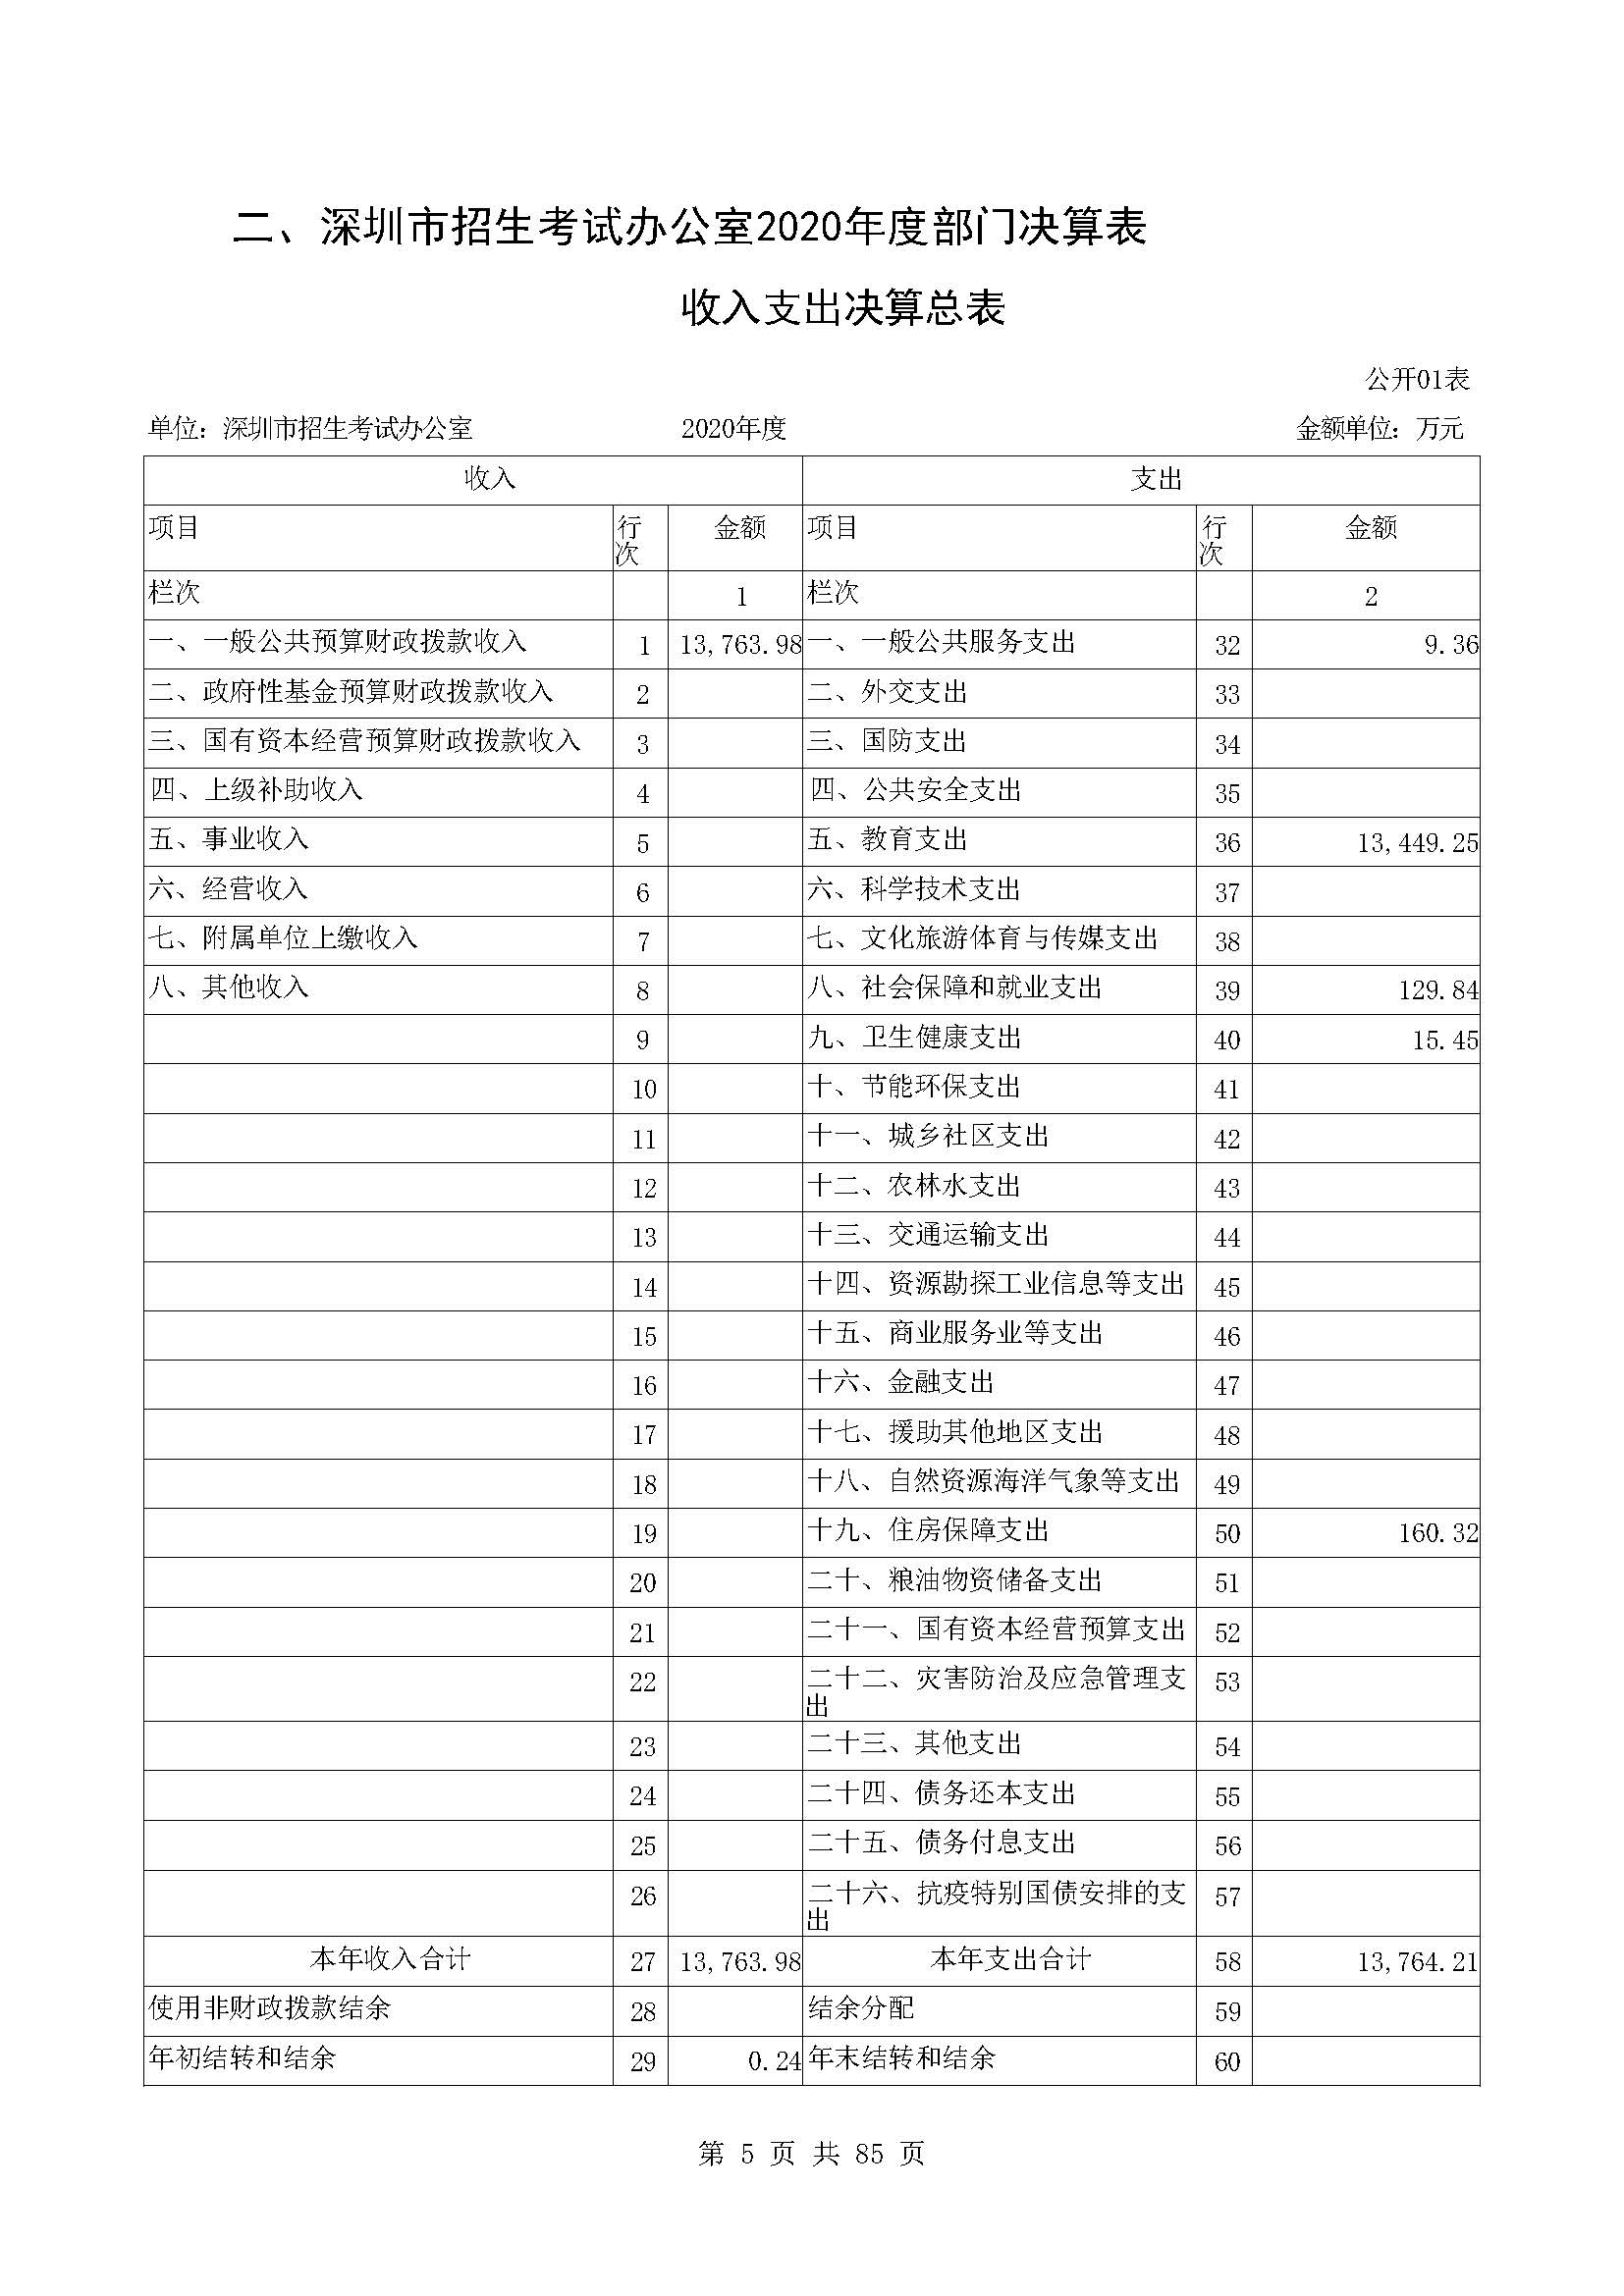 深圳市招生考试办公室2020年度部门决算_页面_06.jpg